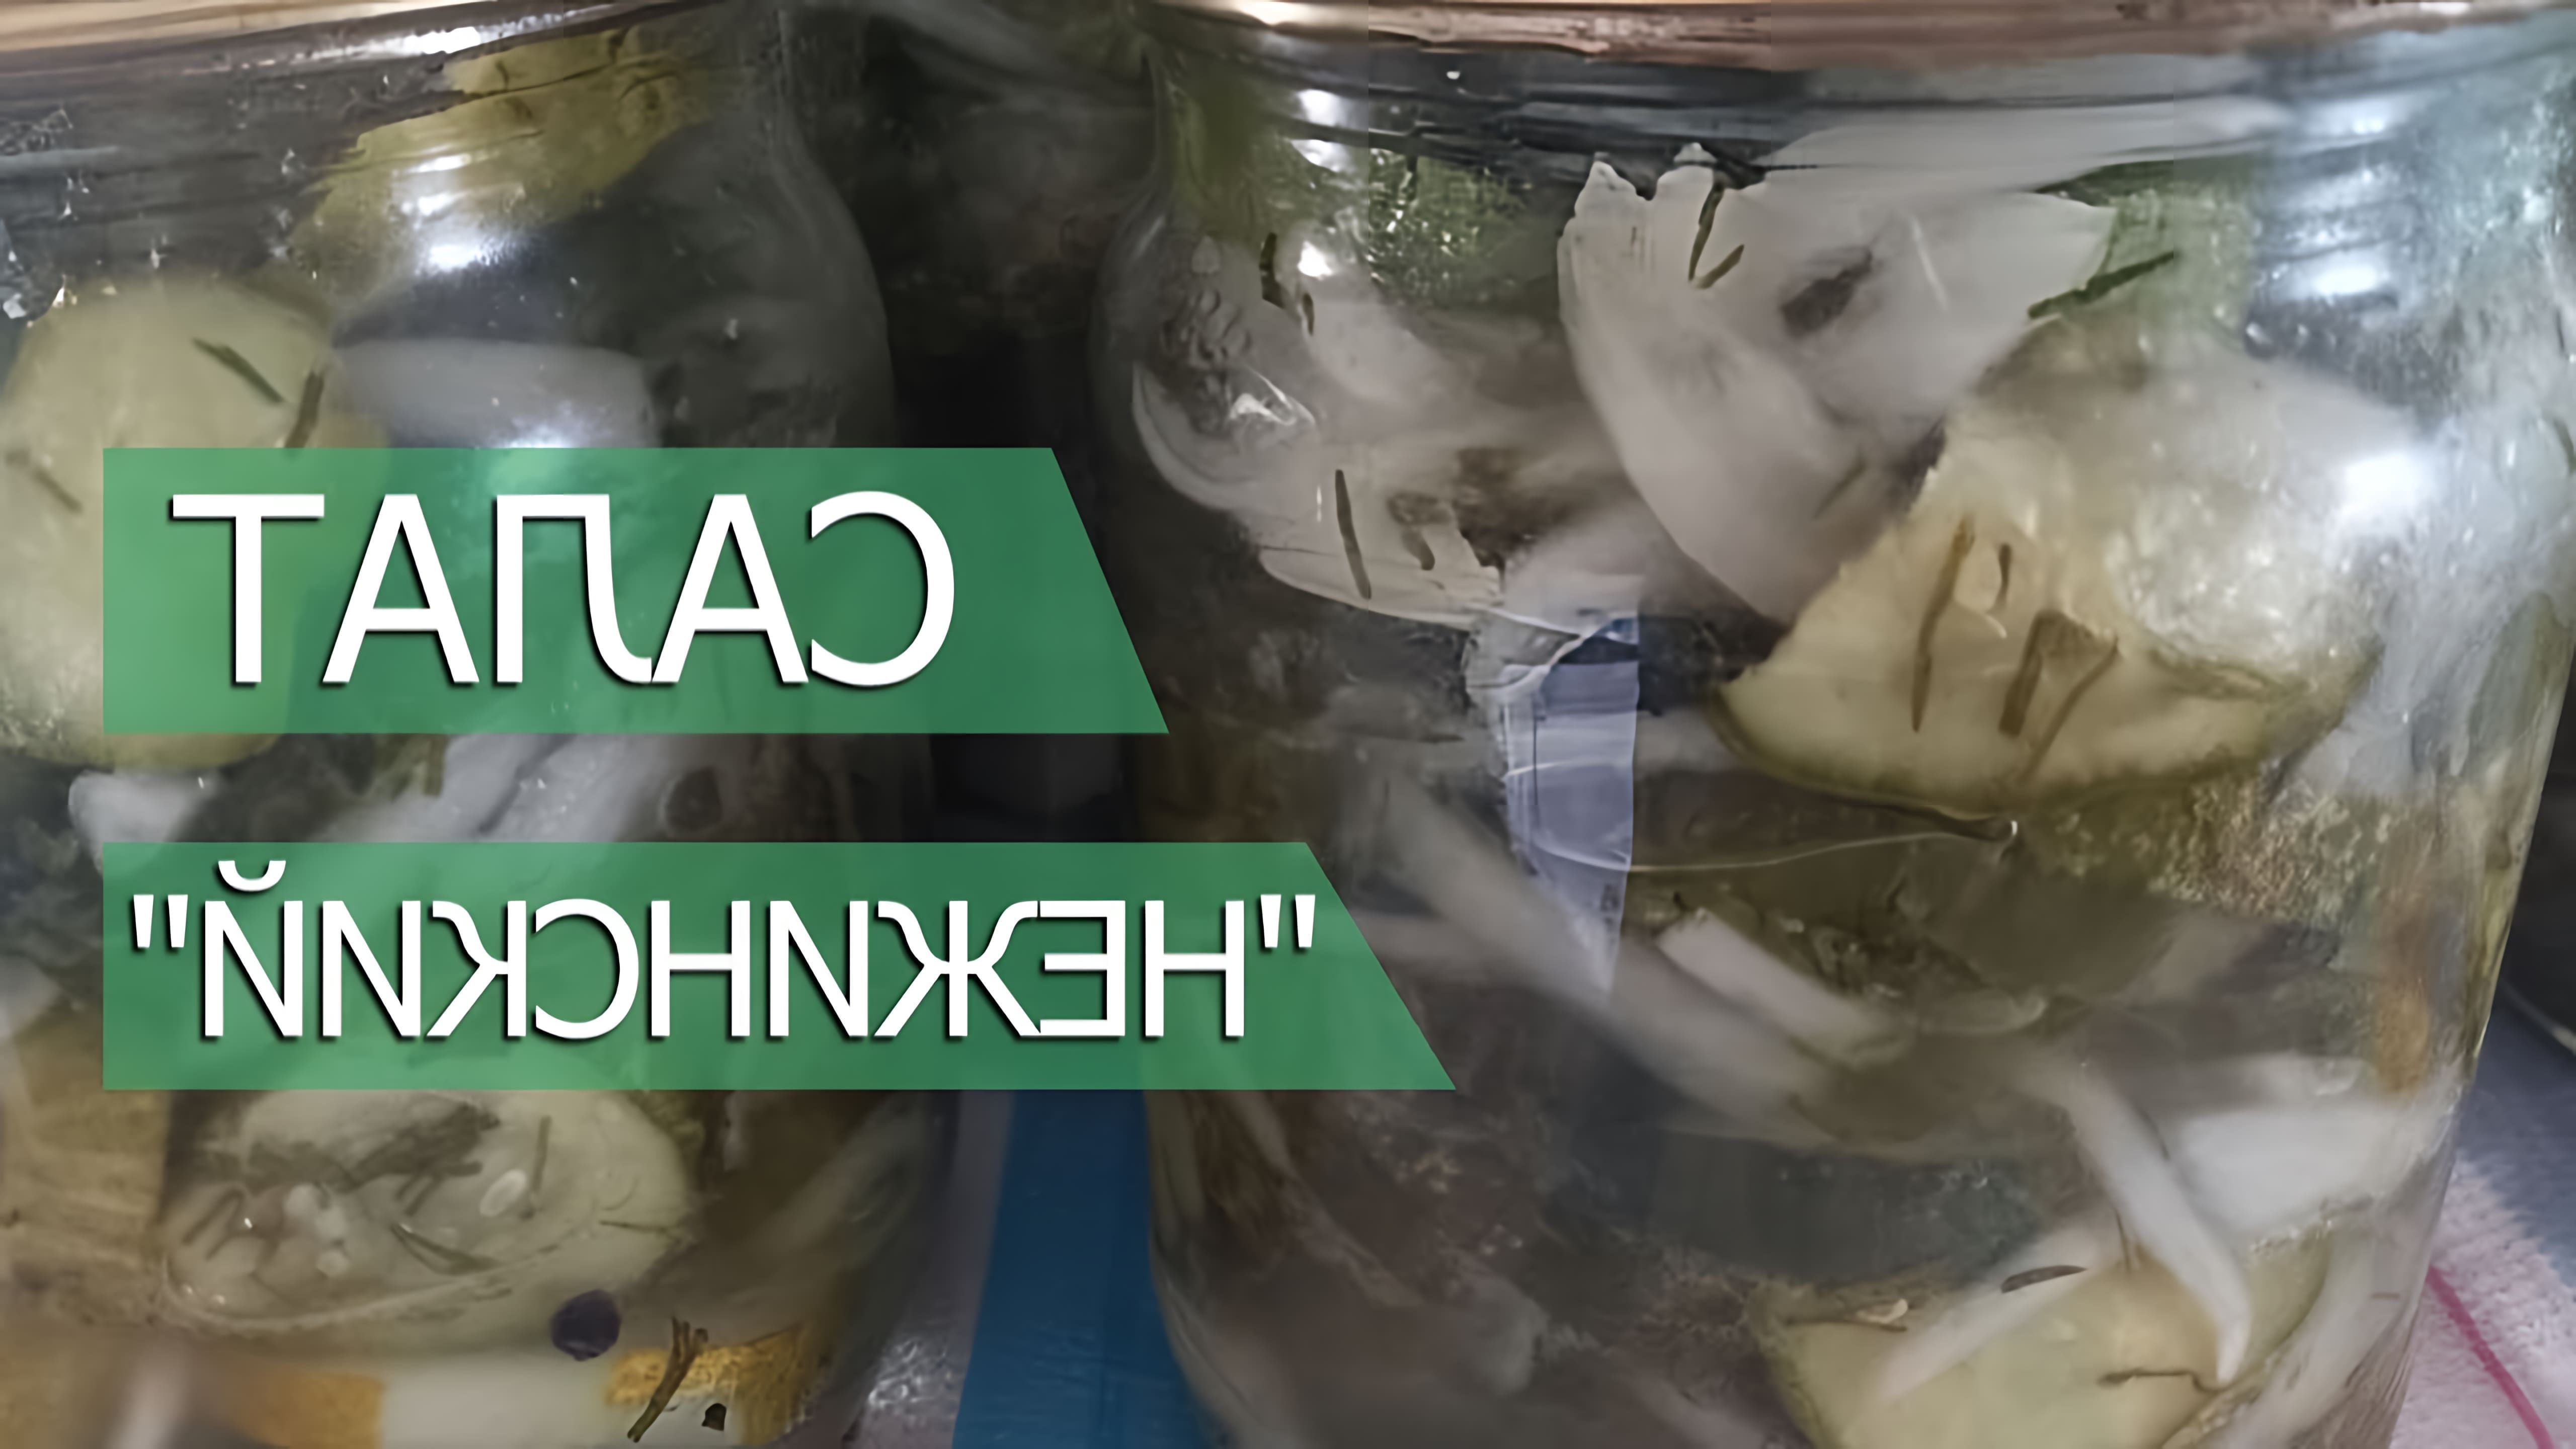 В этом видео демонстрируется процесс приготовления салата "Нежинский" с огурцами и луком на зиму